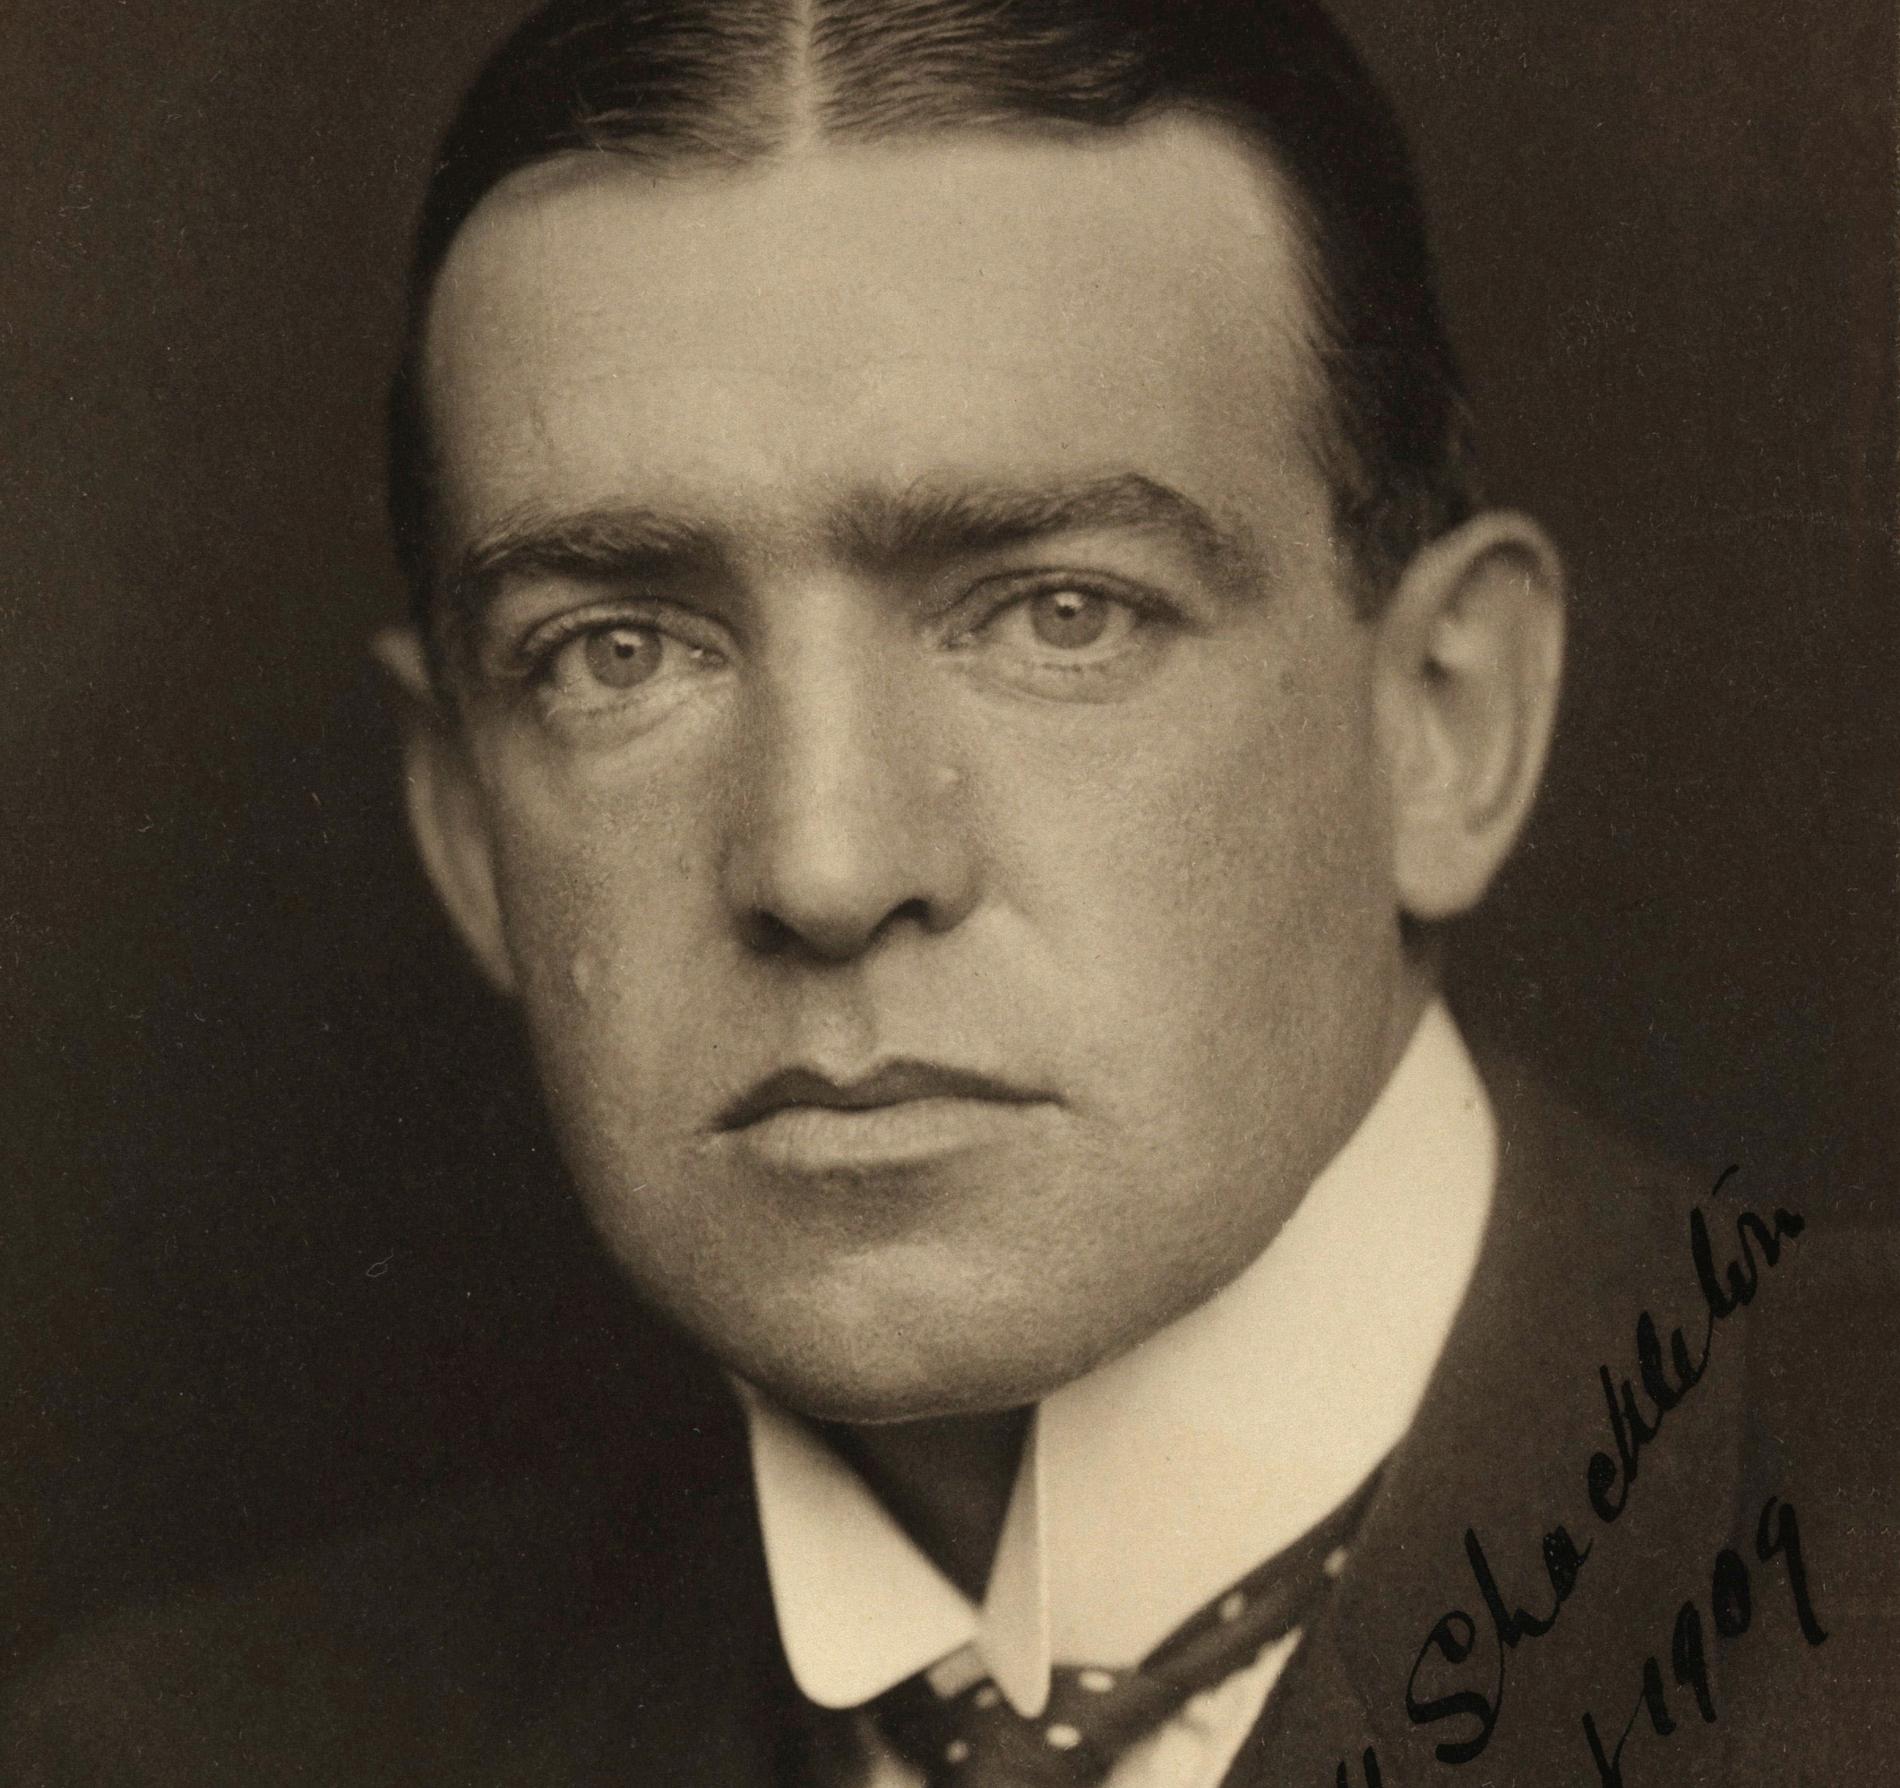 Forskarteamet som hittat ”Endurance” planerar att  stanna till på Sydgeorgien där Ernest Shackleton ligger begravd. De vill visa sin respekt för ”The Boss”. 